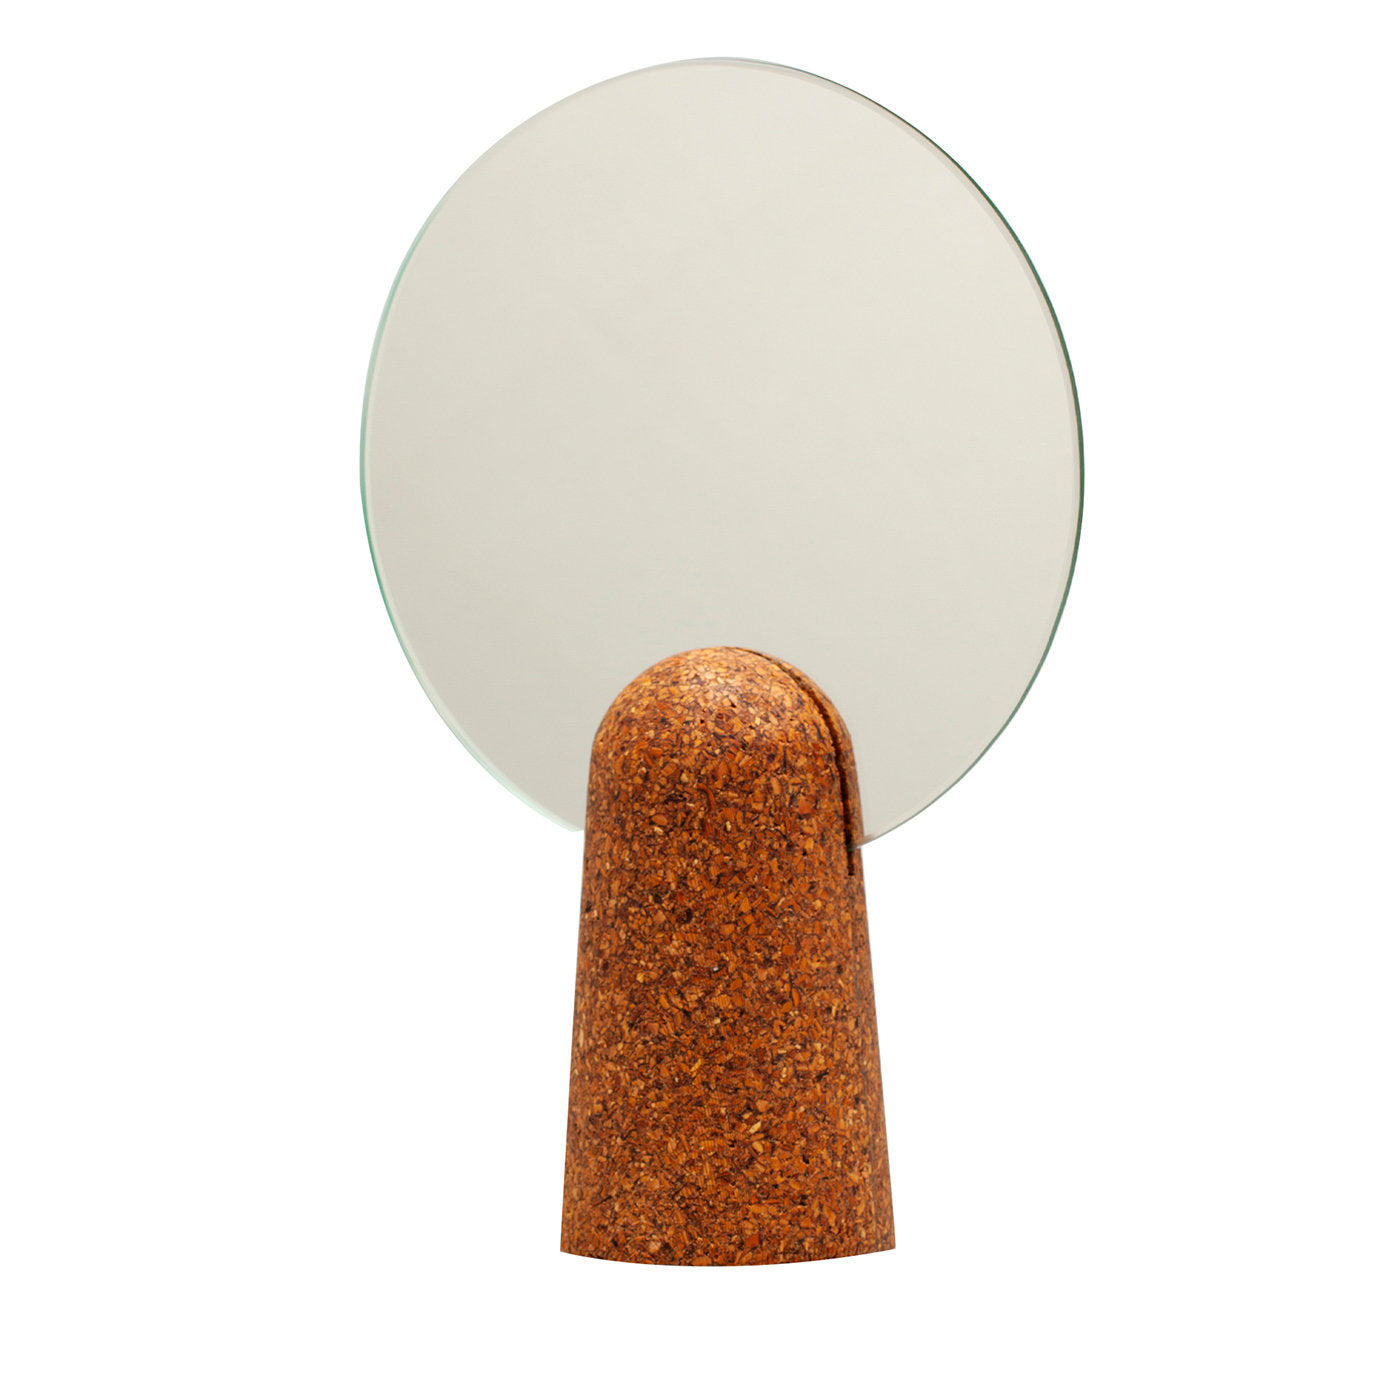 Mandel tisch spiegel by Dudesign - Hauptansicht